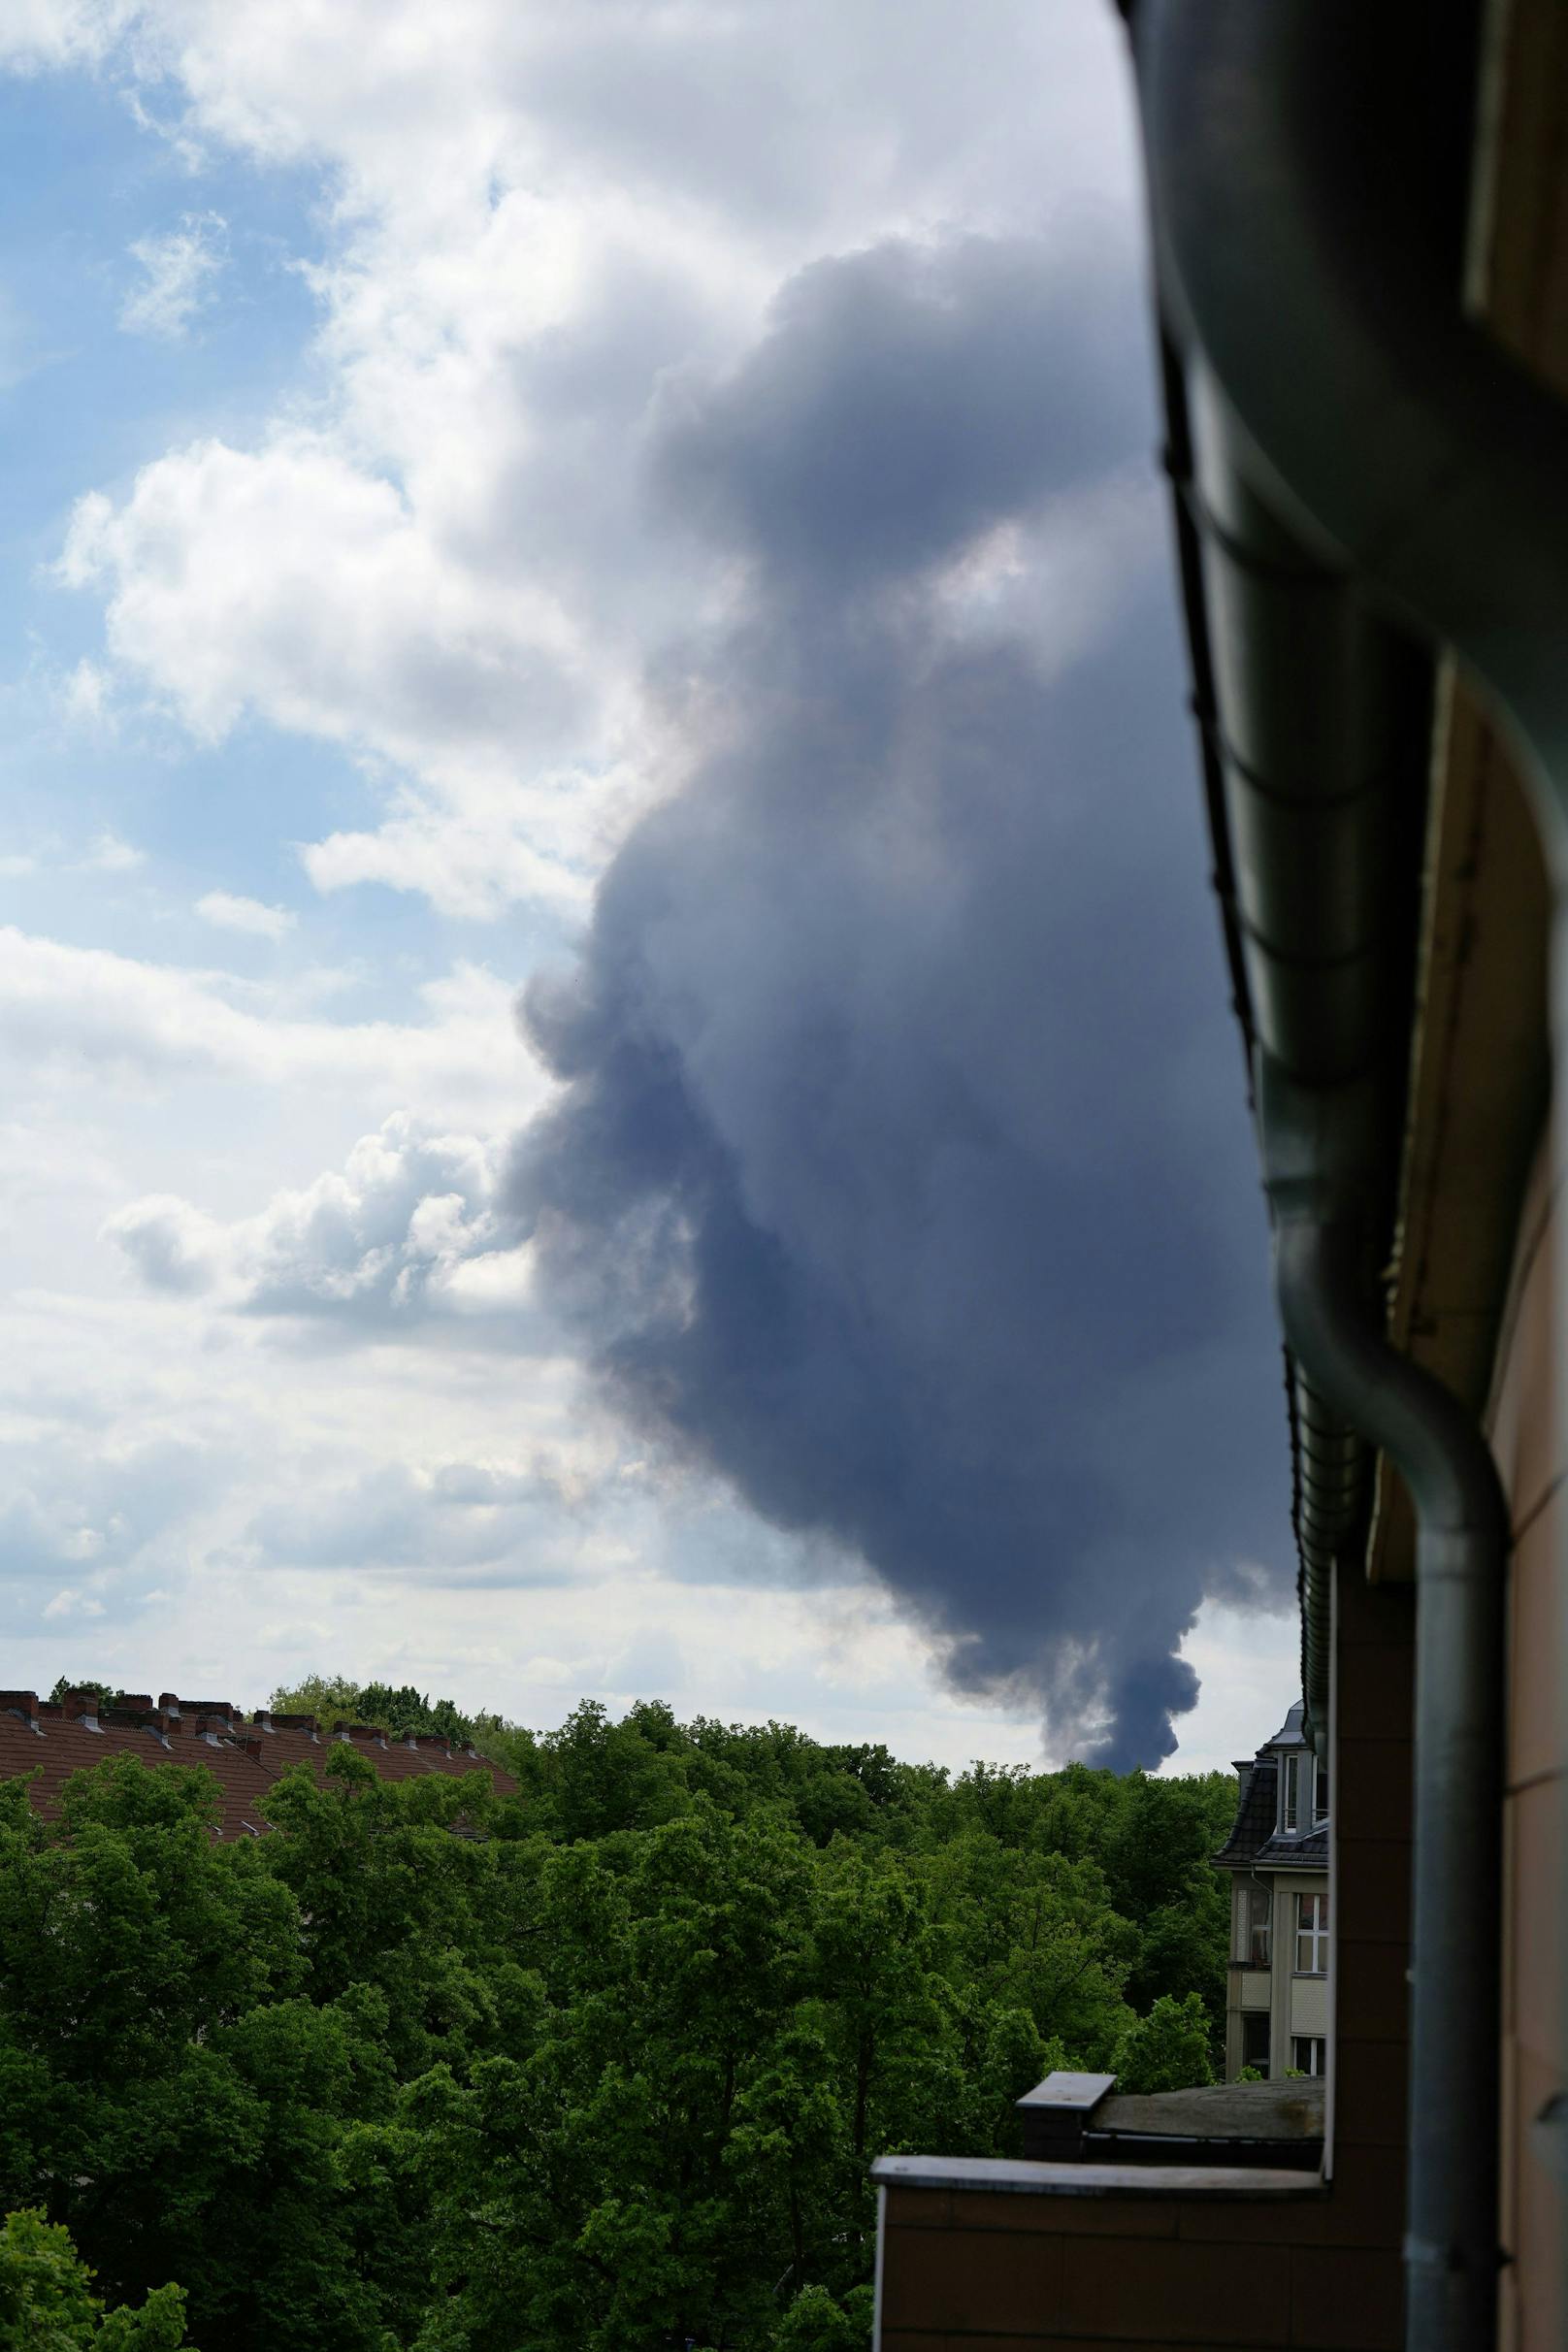 3. Mai 2023, Berlin: Ein Großbrand in einer Werkshalle der Diehl-Gruppe fordert die Feuerwehr. Eine Einsatzkräfte warnen vor einer gefährlichen Giftwolke.